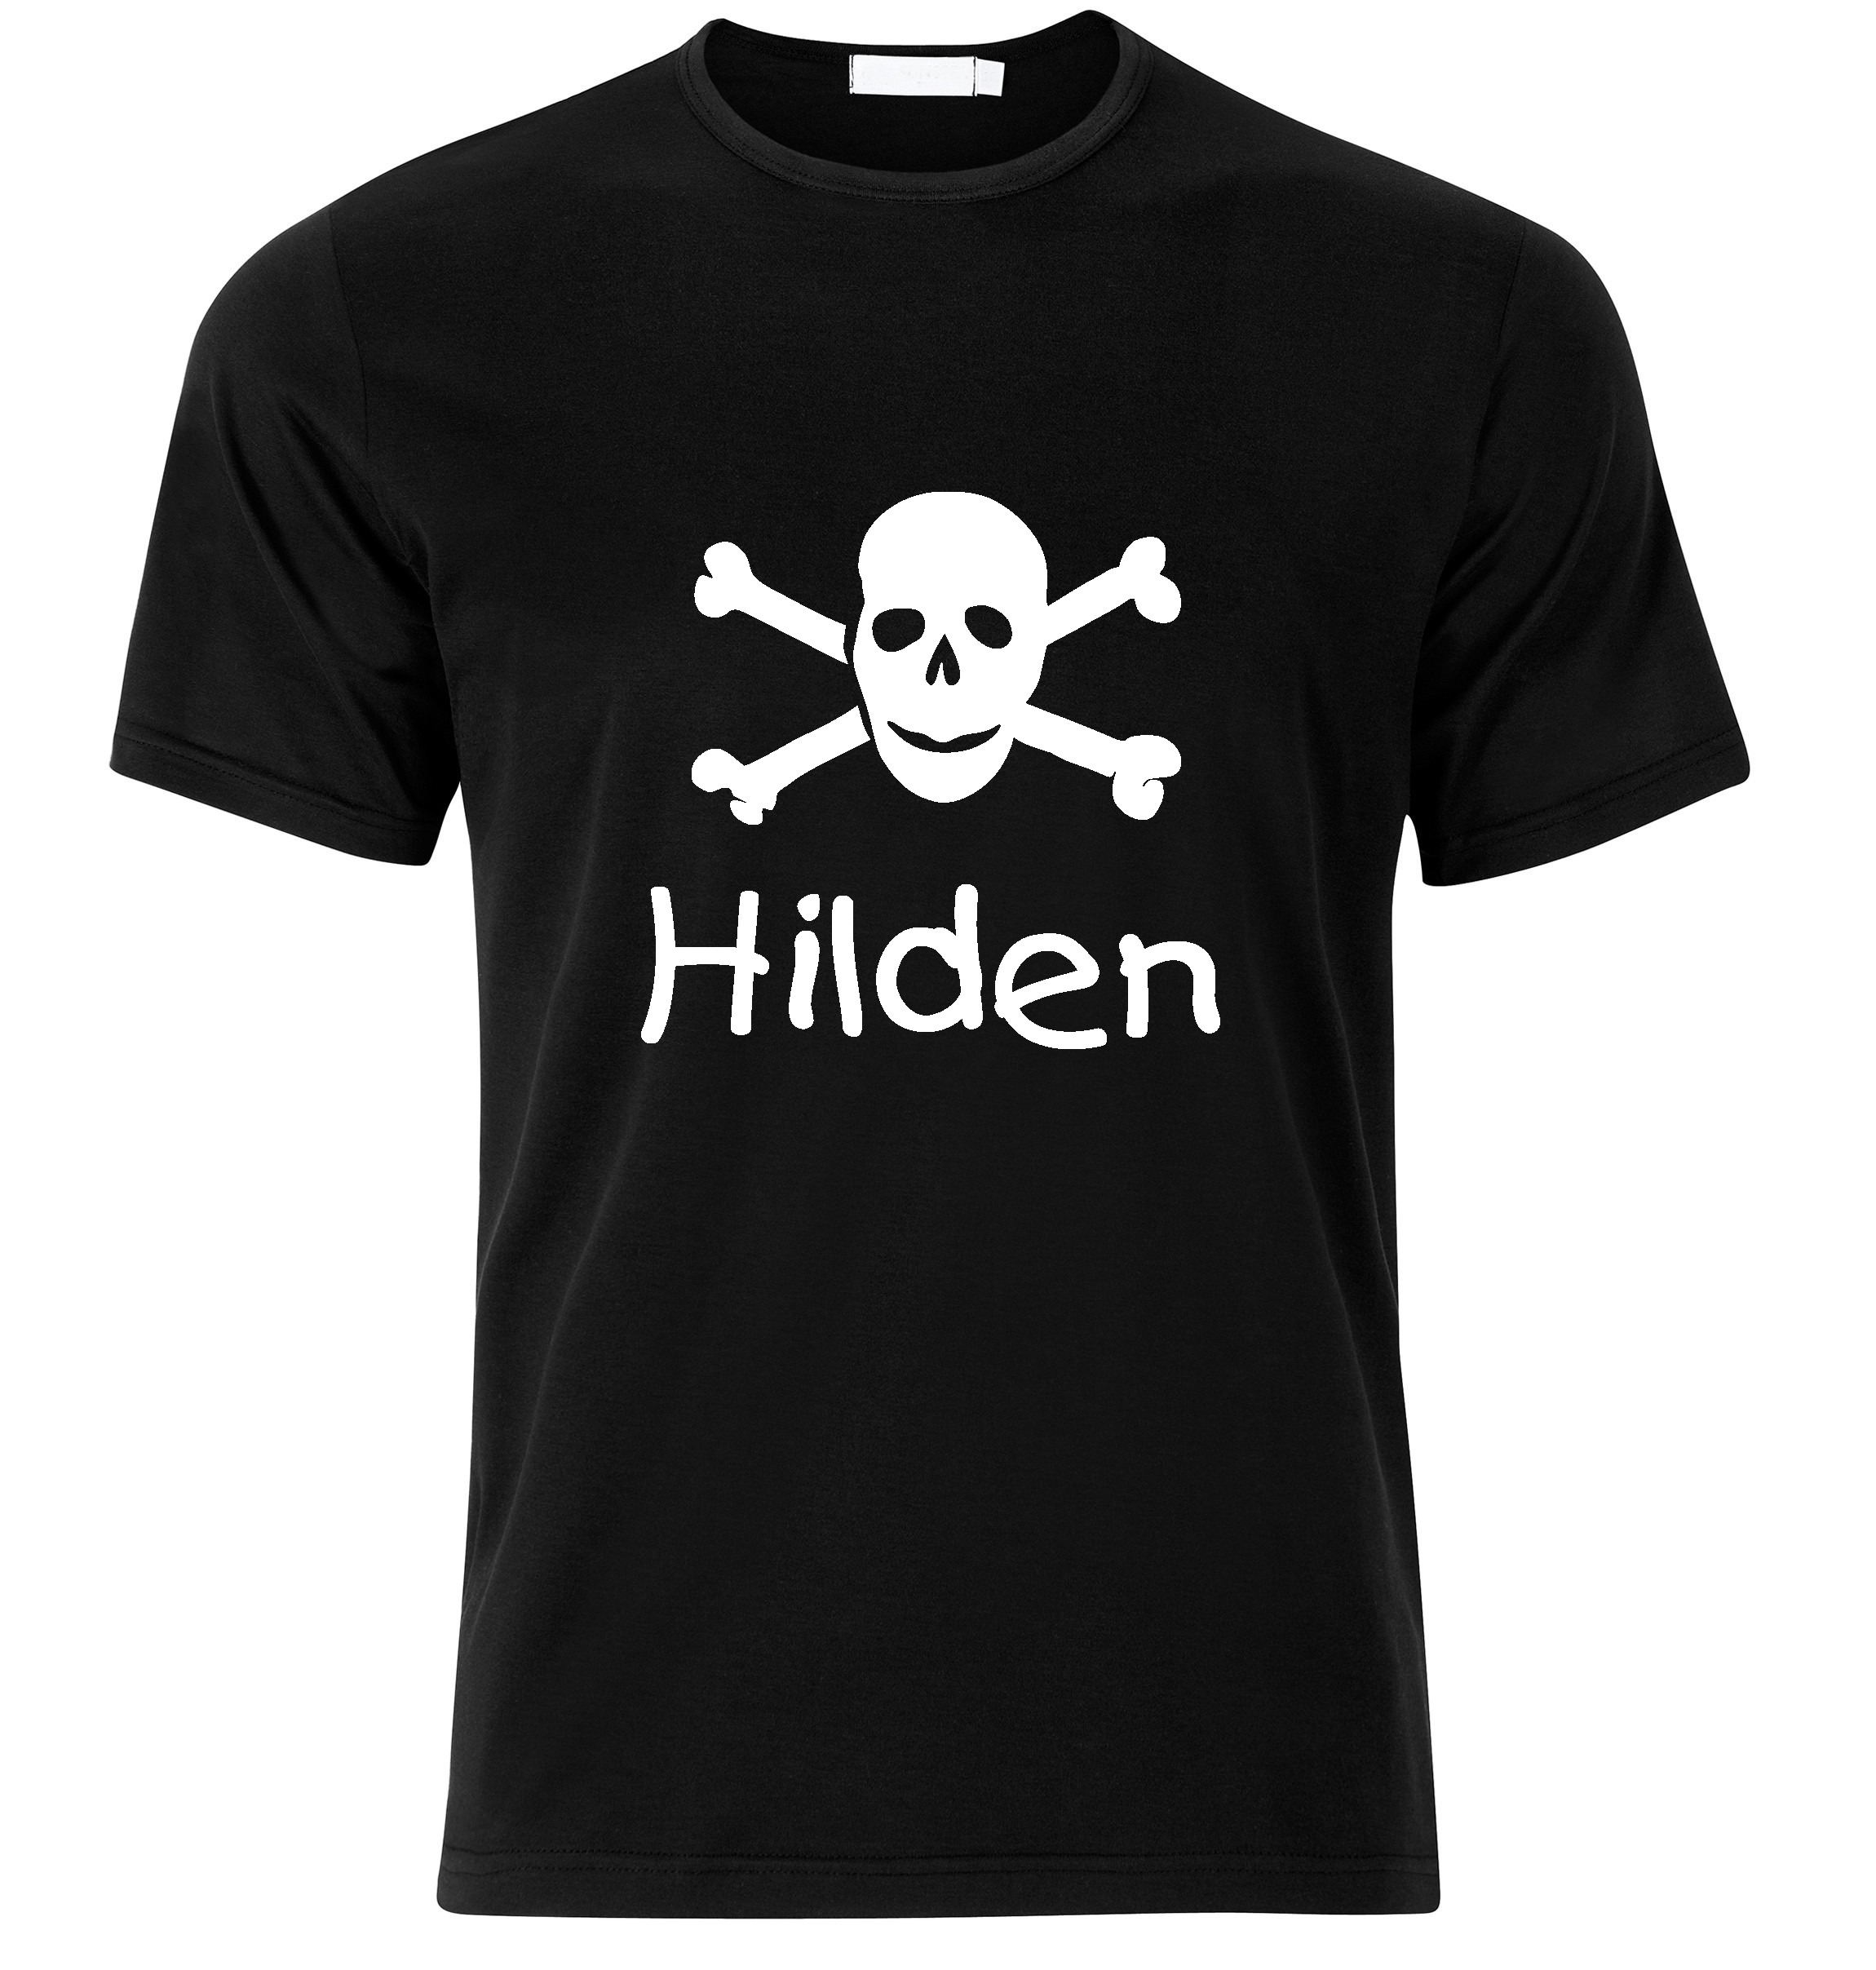 T-Shirt Hilden Jolly Roger, Totenkopf